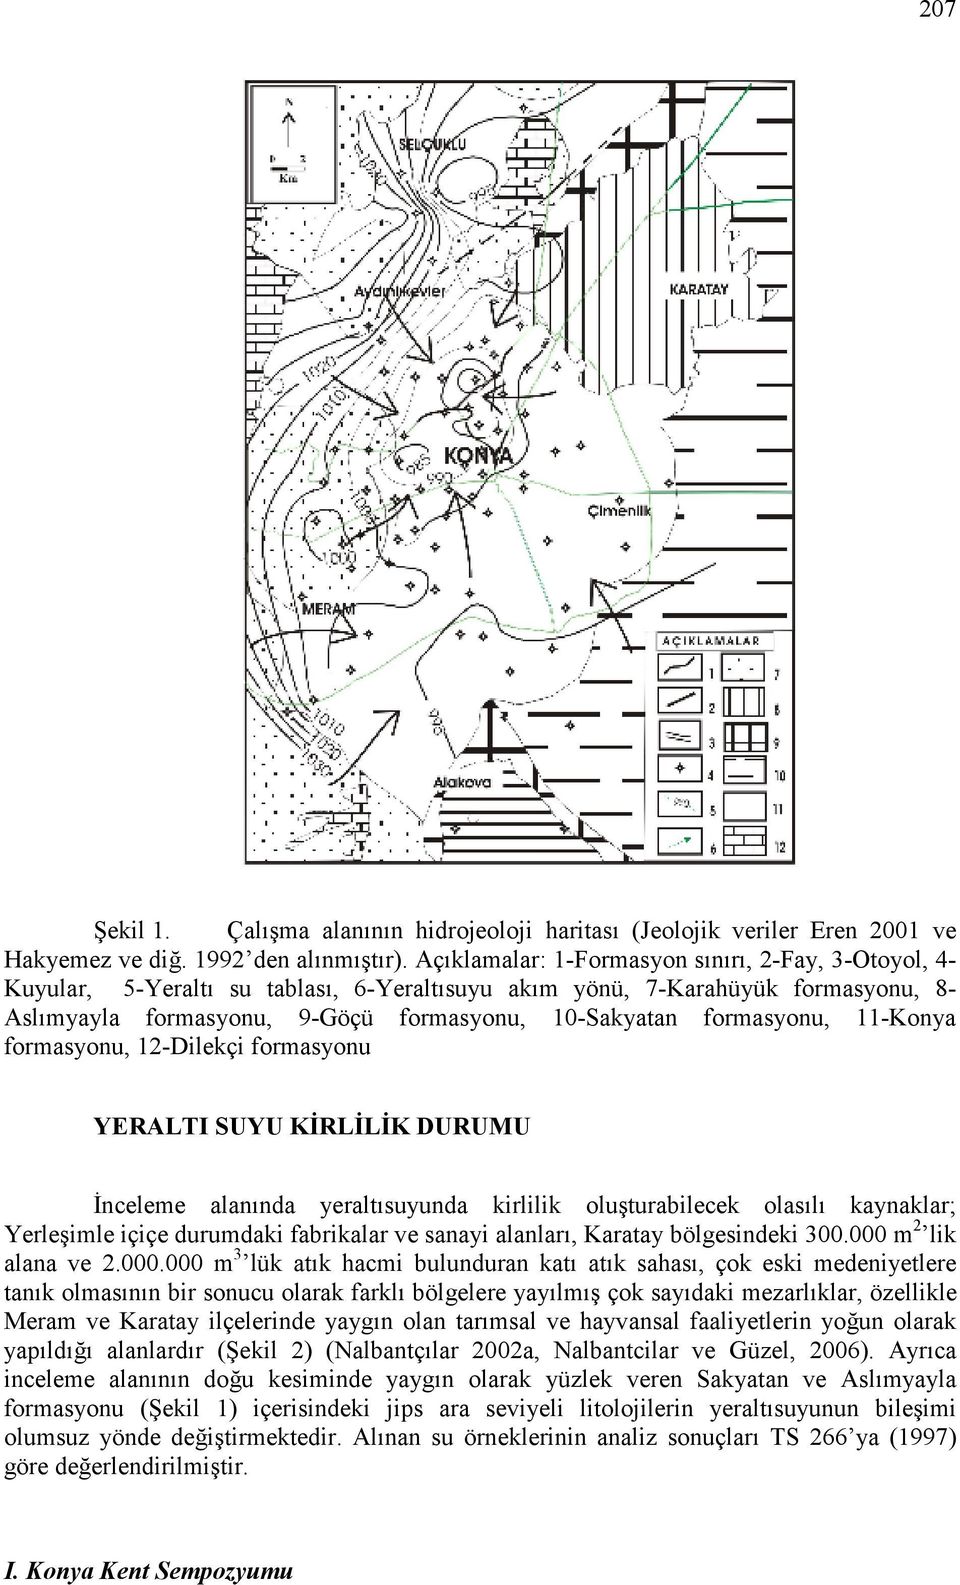 formasyonu, 11-Konya formasyonu, 12-Dilekçi formasyonu YERALTI SUYU KĐRLĐLĐK DURUMU Đnceleme alanında yeraltısuyunda kirlilik oluşturabilecek olasılı kaynaklar; Yerleşimle içiçe durumdaki fabrikalar